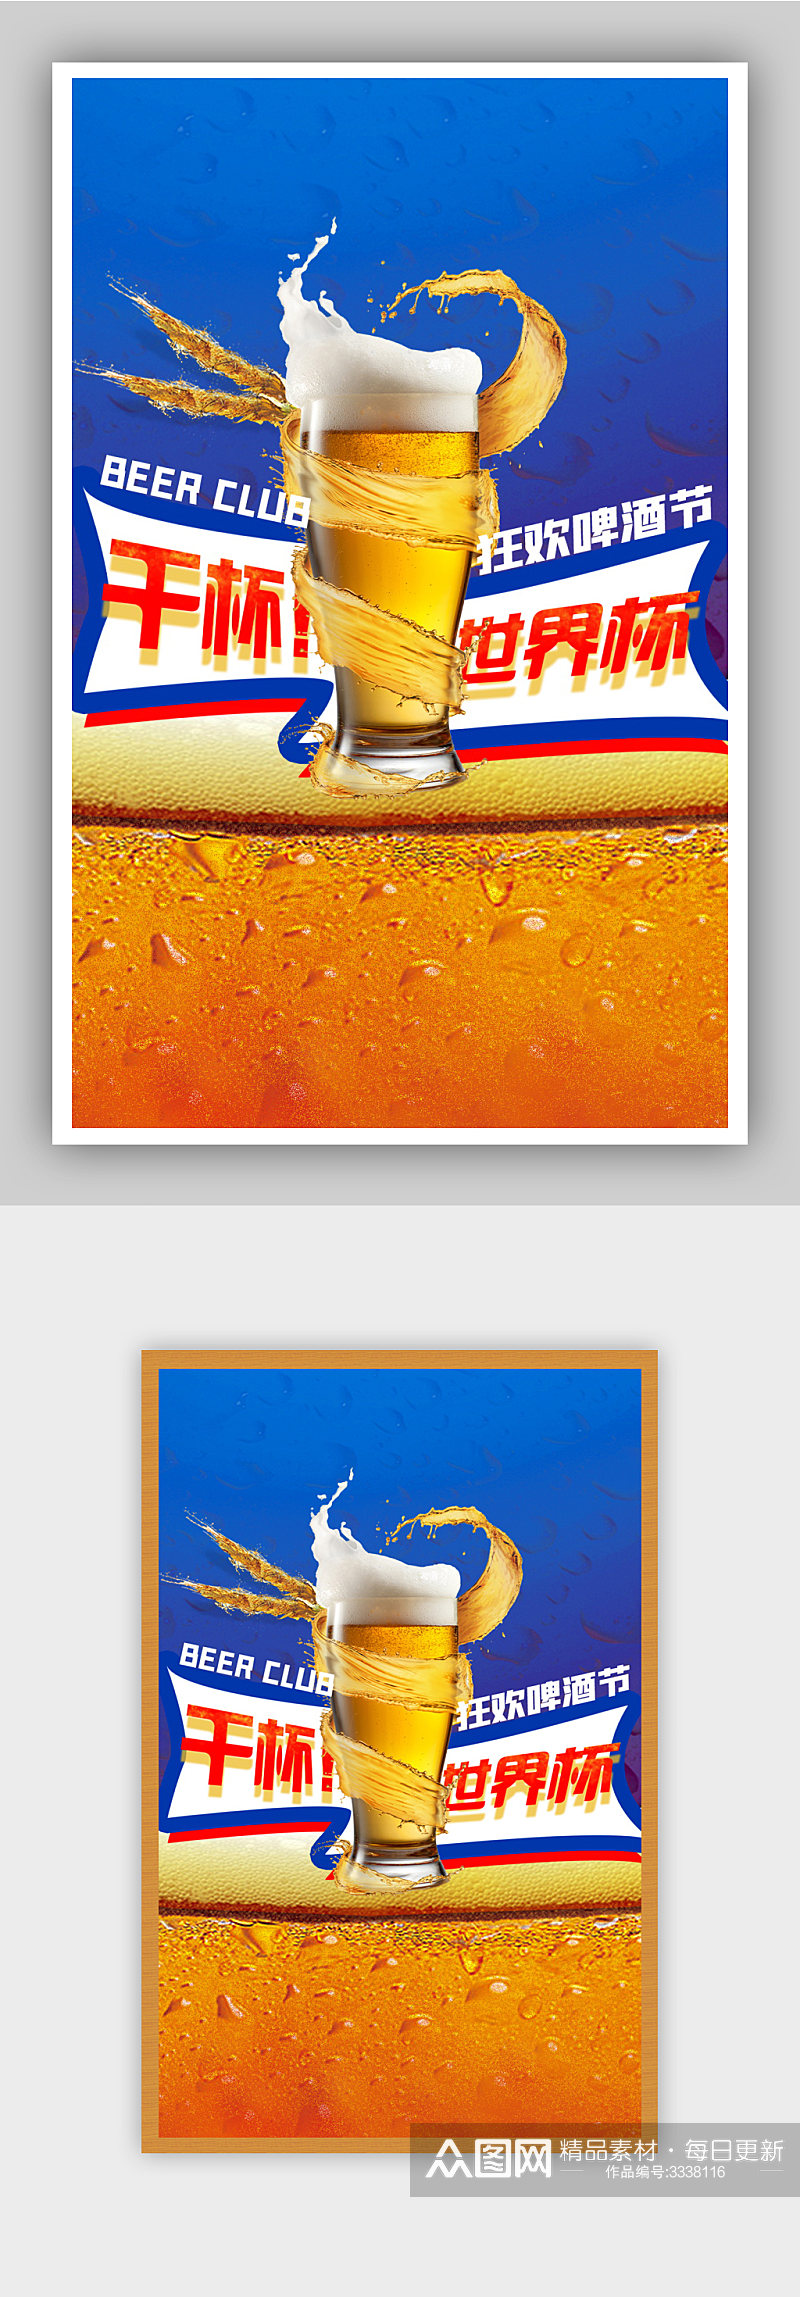 世界杯啤酒狂欢节促销酒水海报素材